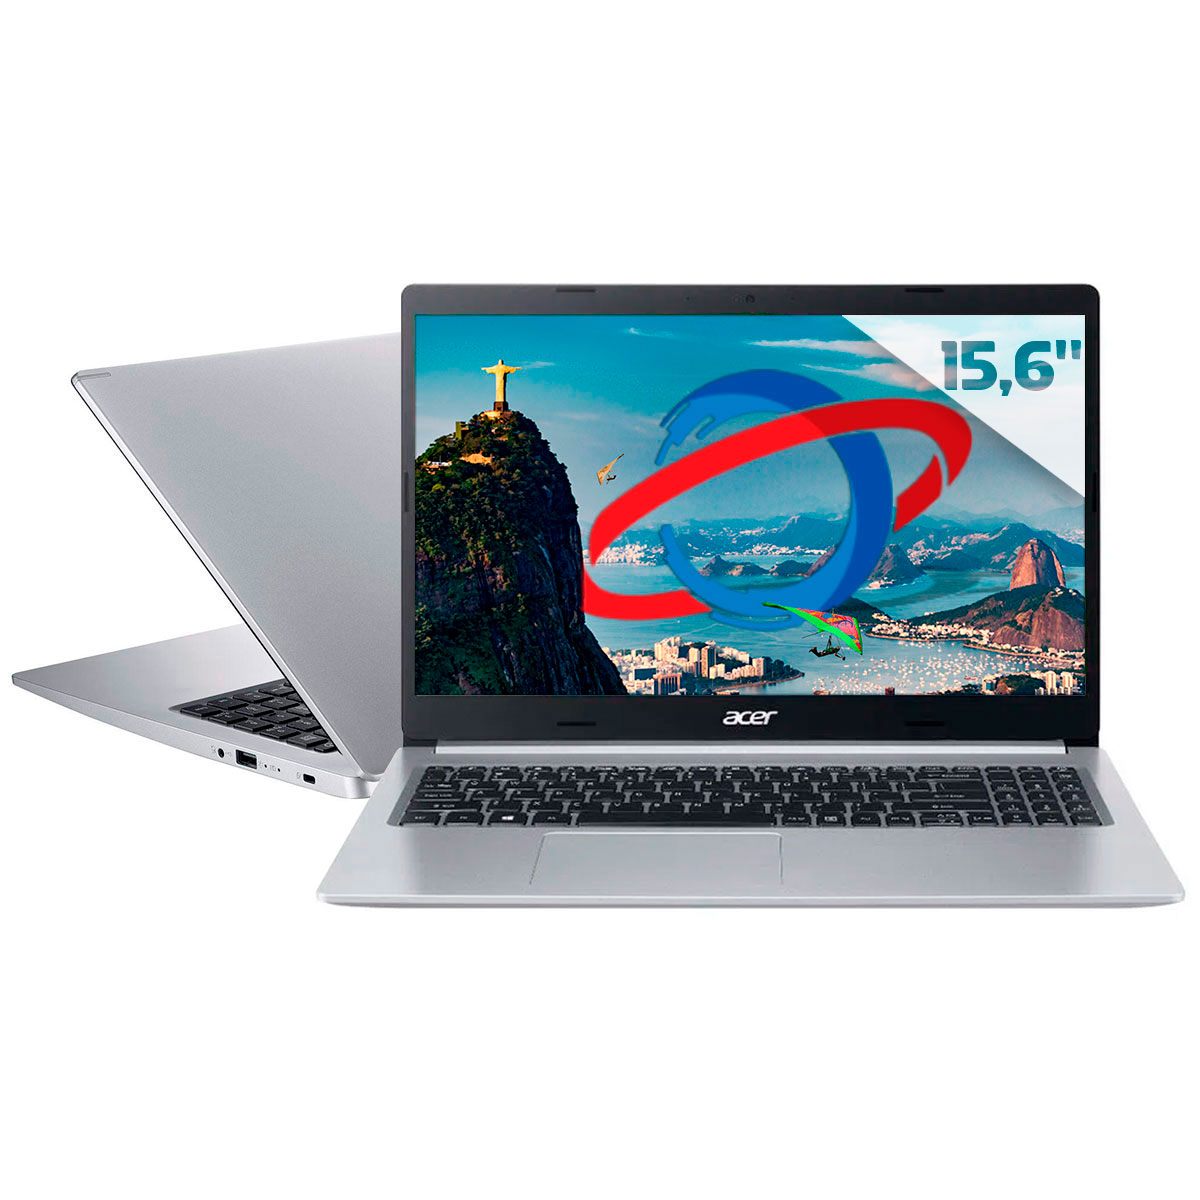 Notebook Acer Aspire A515-54-57EN - Intel i5 1035G1, RAM 20GB, SSD 256GB, Tela 15.6